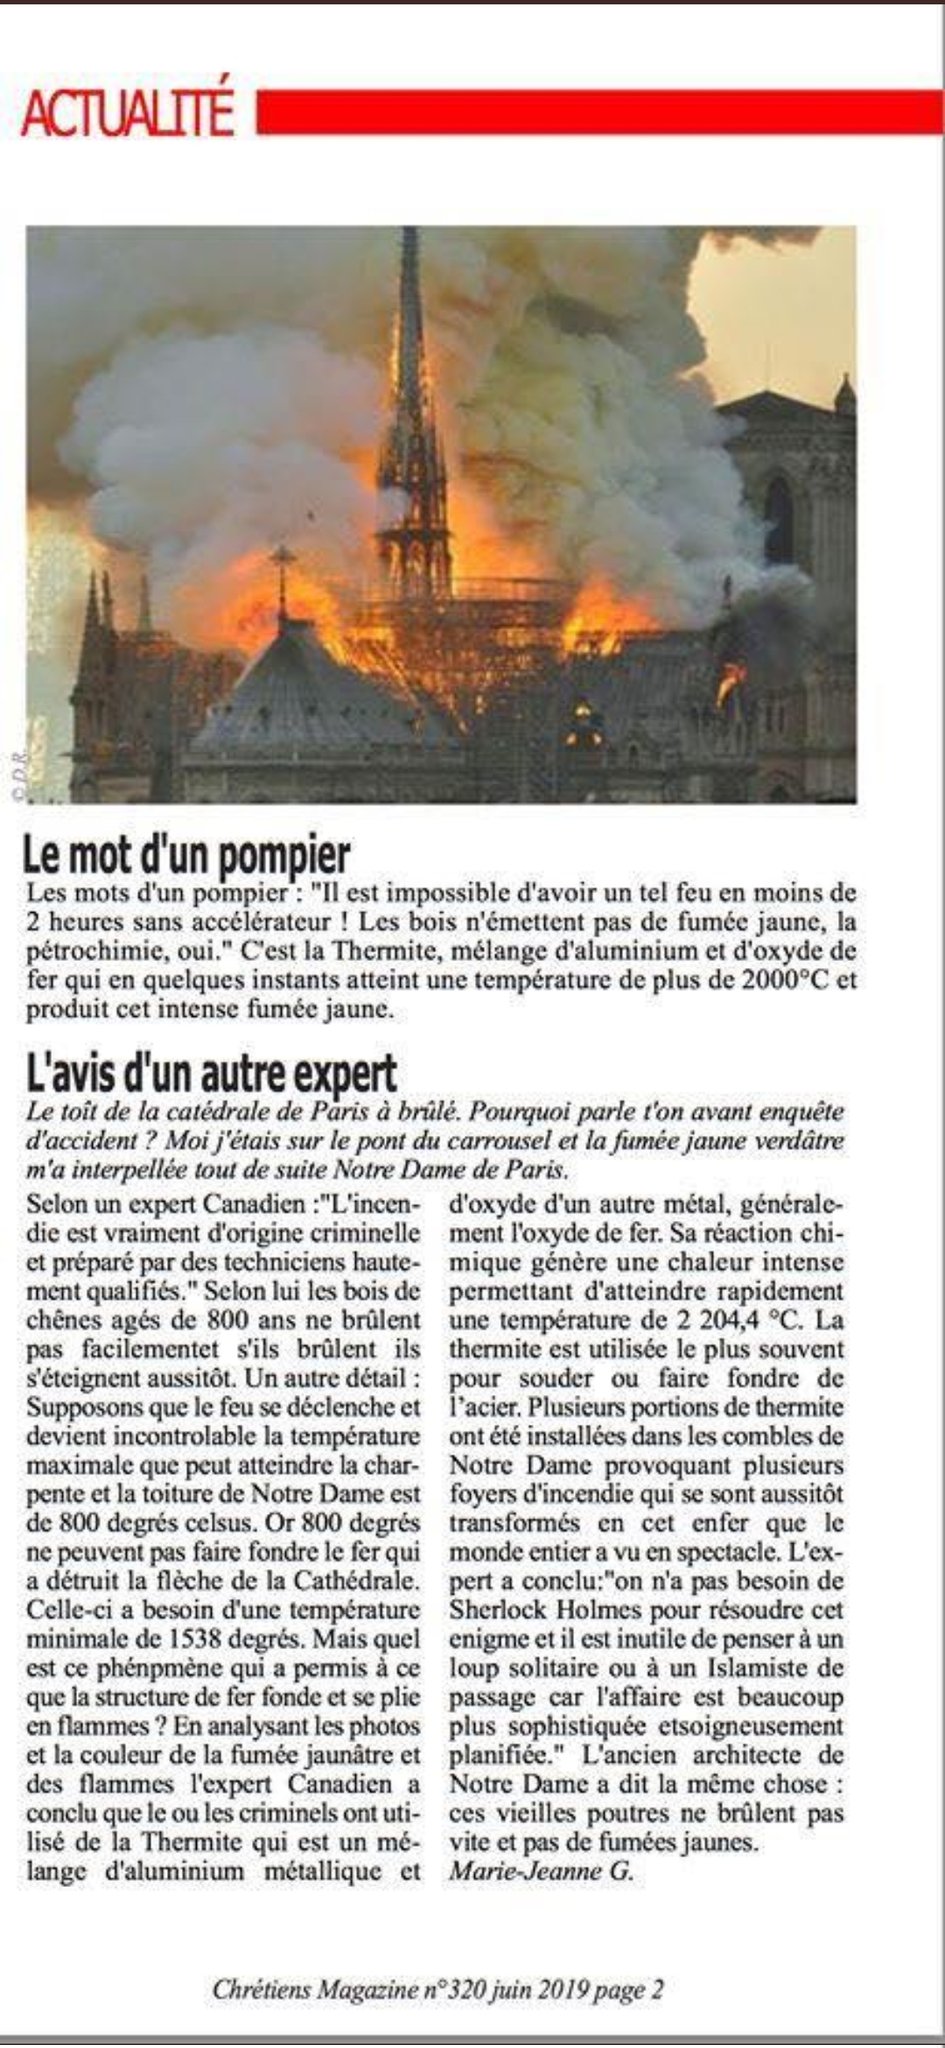 Chrześcijanie Magazine Notre Dame.jpg